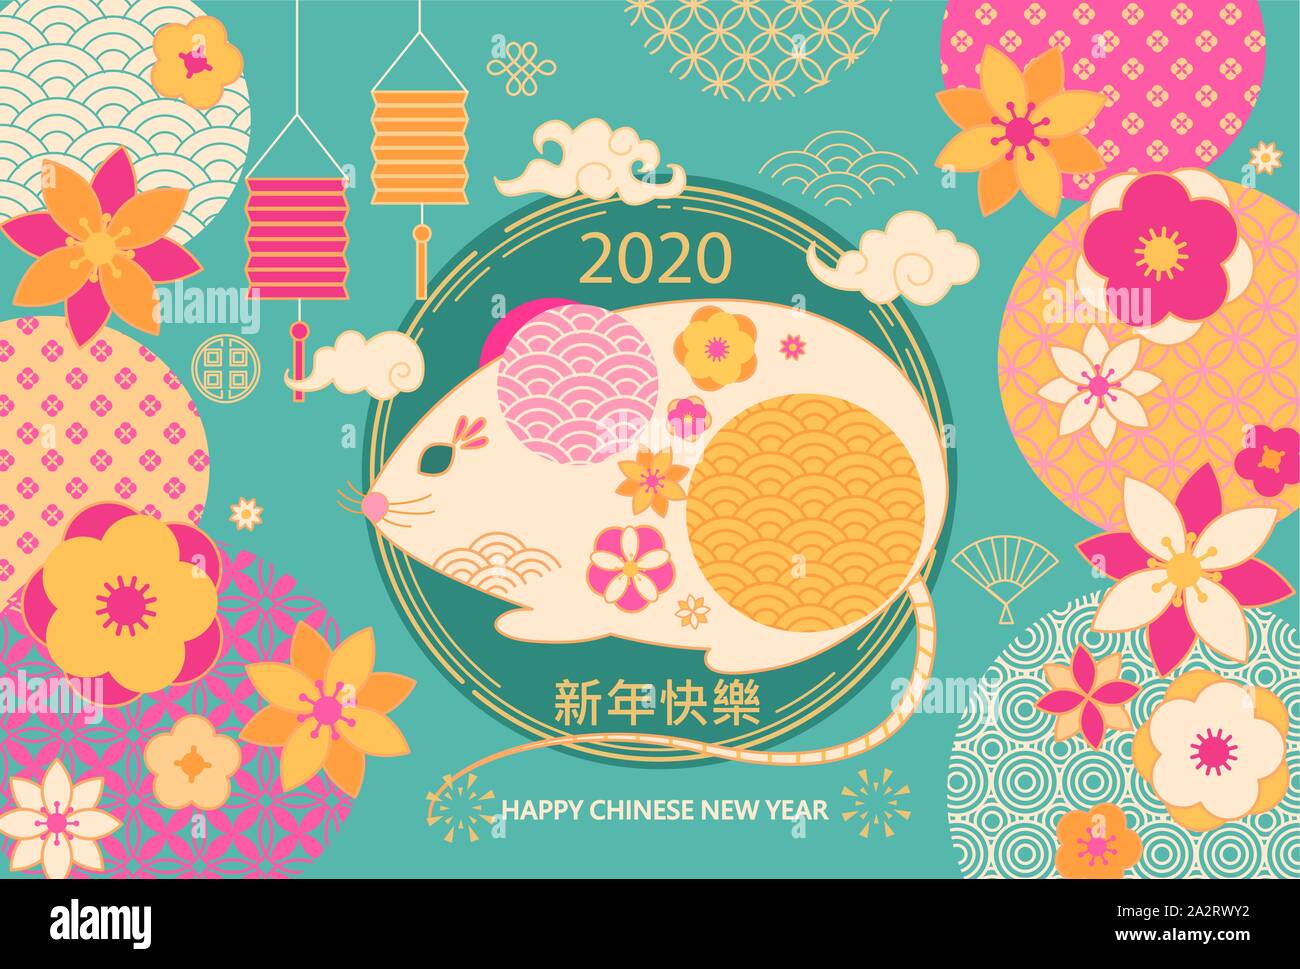 Bannière de bienvenue pour les professionnels 2020 Nouvel An chinois,carte élégante avec fat rat,fleurs,tendances,lanterne,qui souhaite "Bonne année" à partir de la traduction chinoise.G Illustration de Vecteur